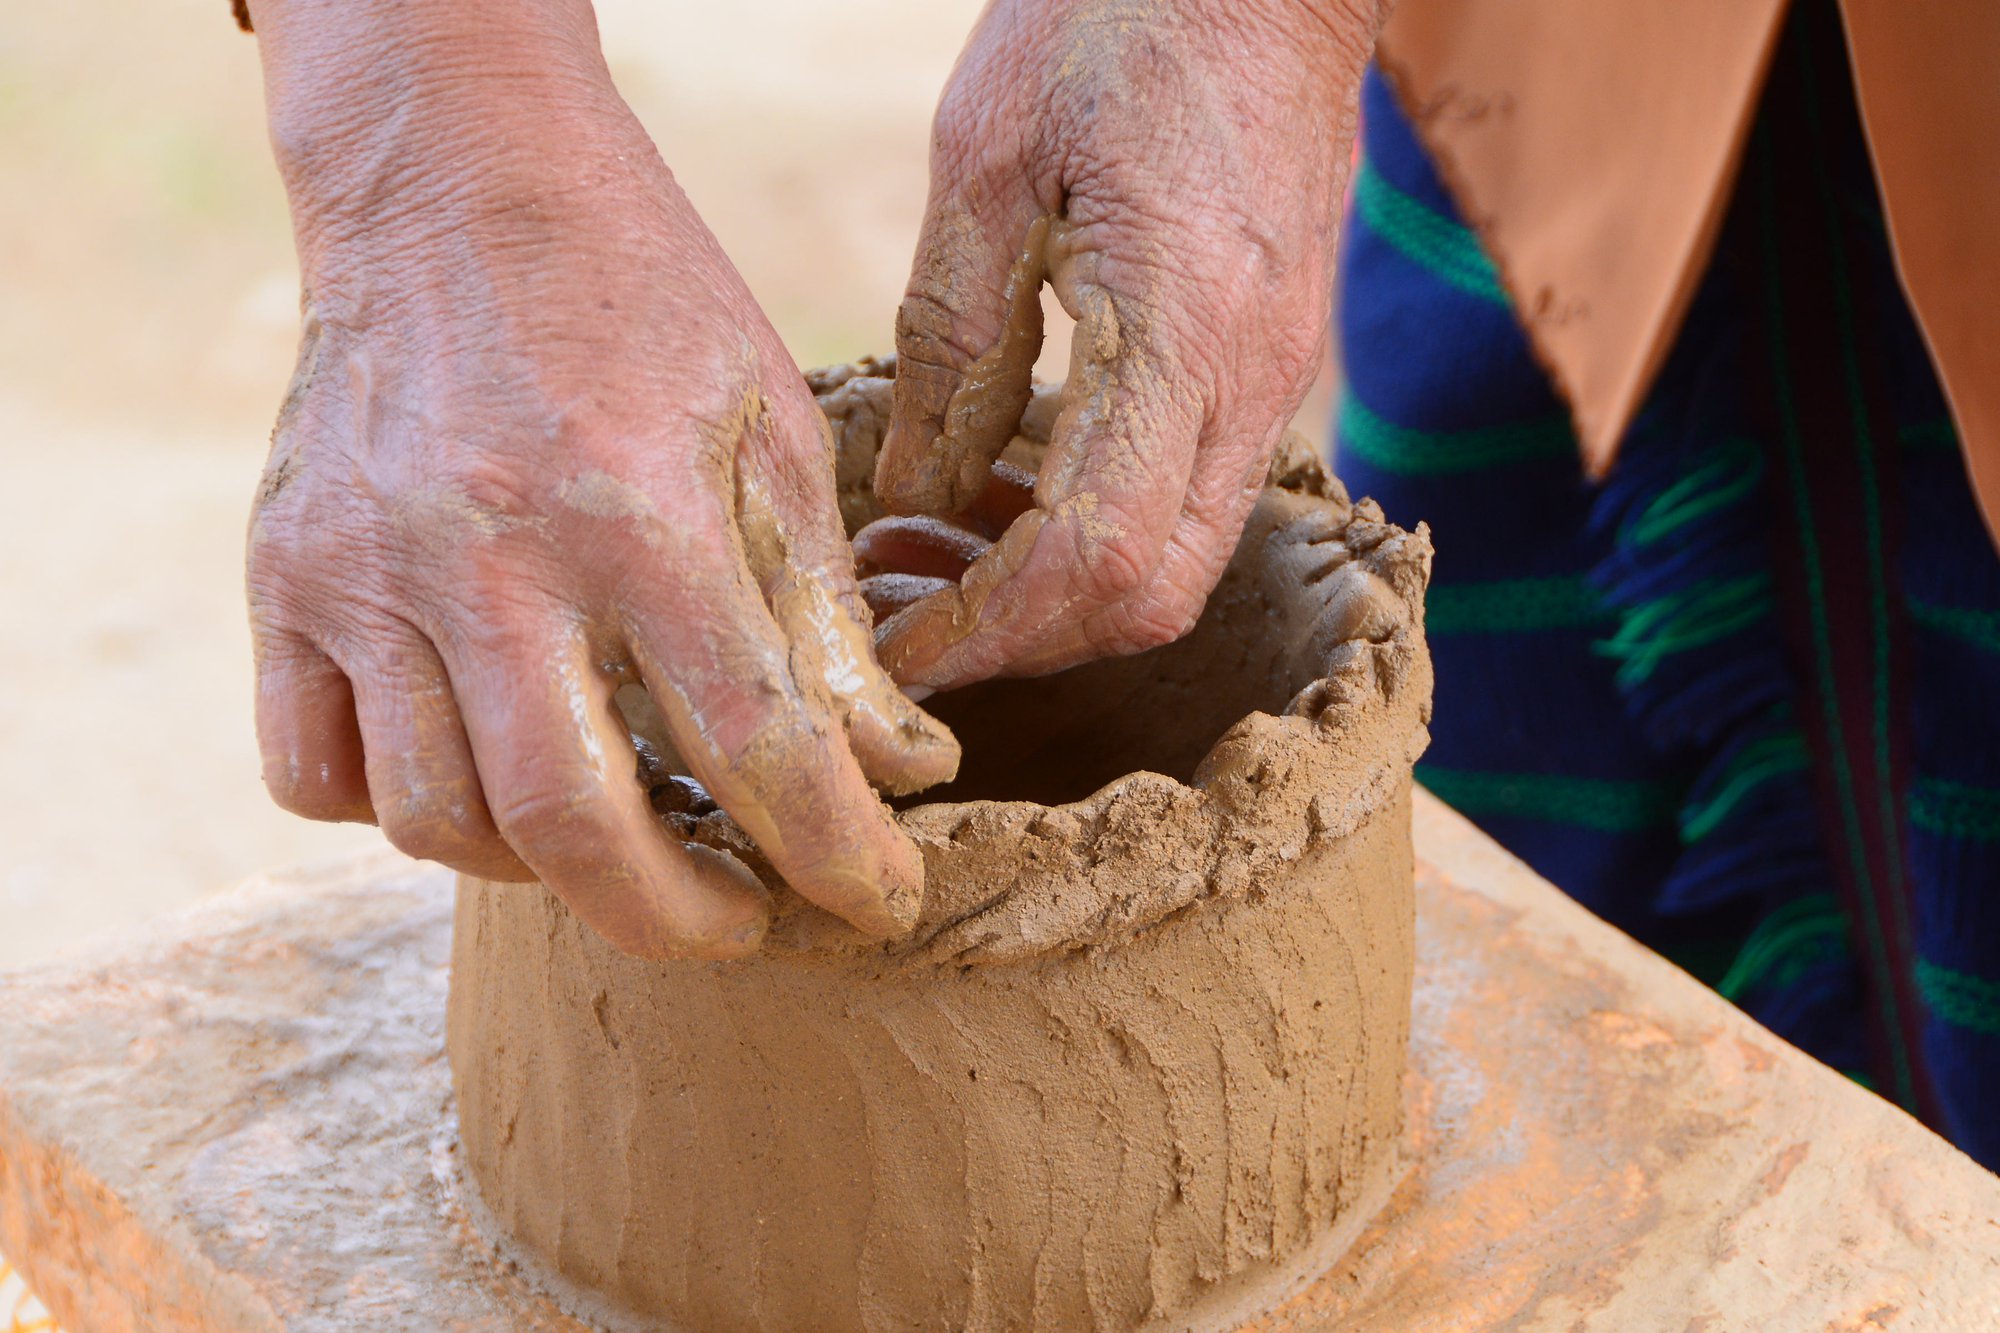 Nghệ nhân gần 70 tuổi người Churu làm gốm không dùng bàn xoay, nung gốm lộ thiên - Ảnh 5.